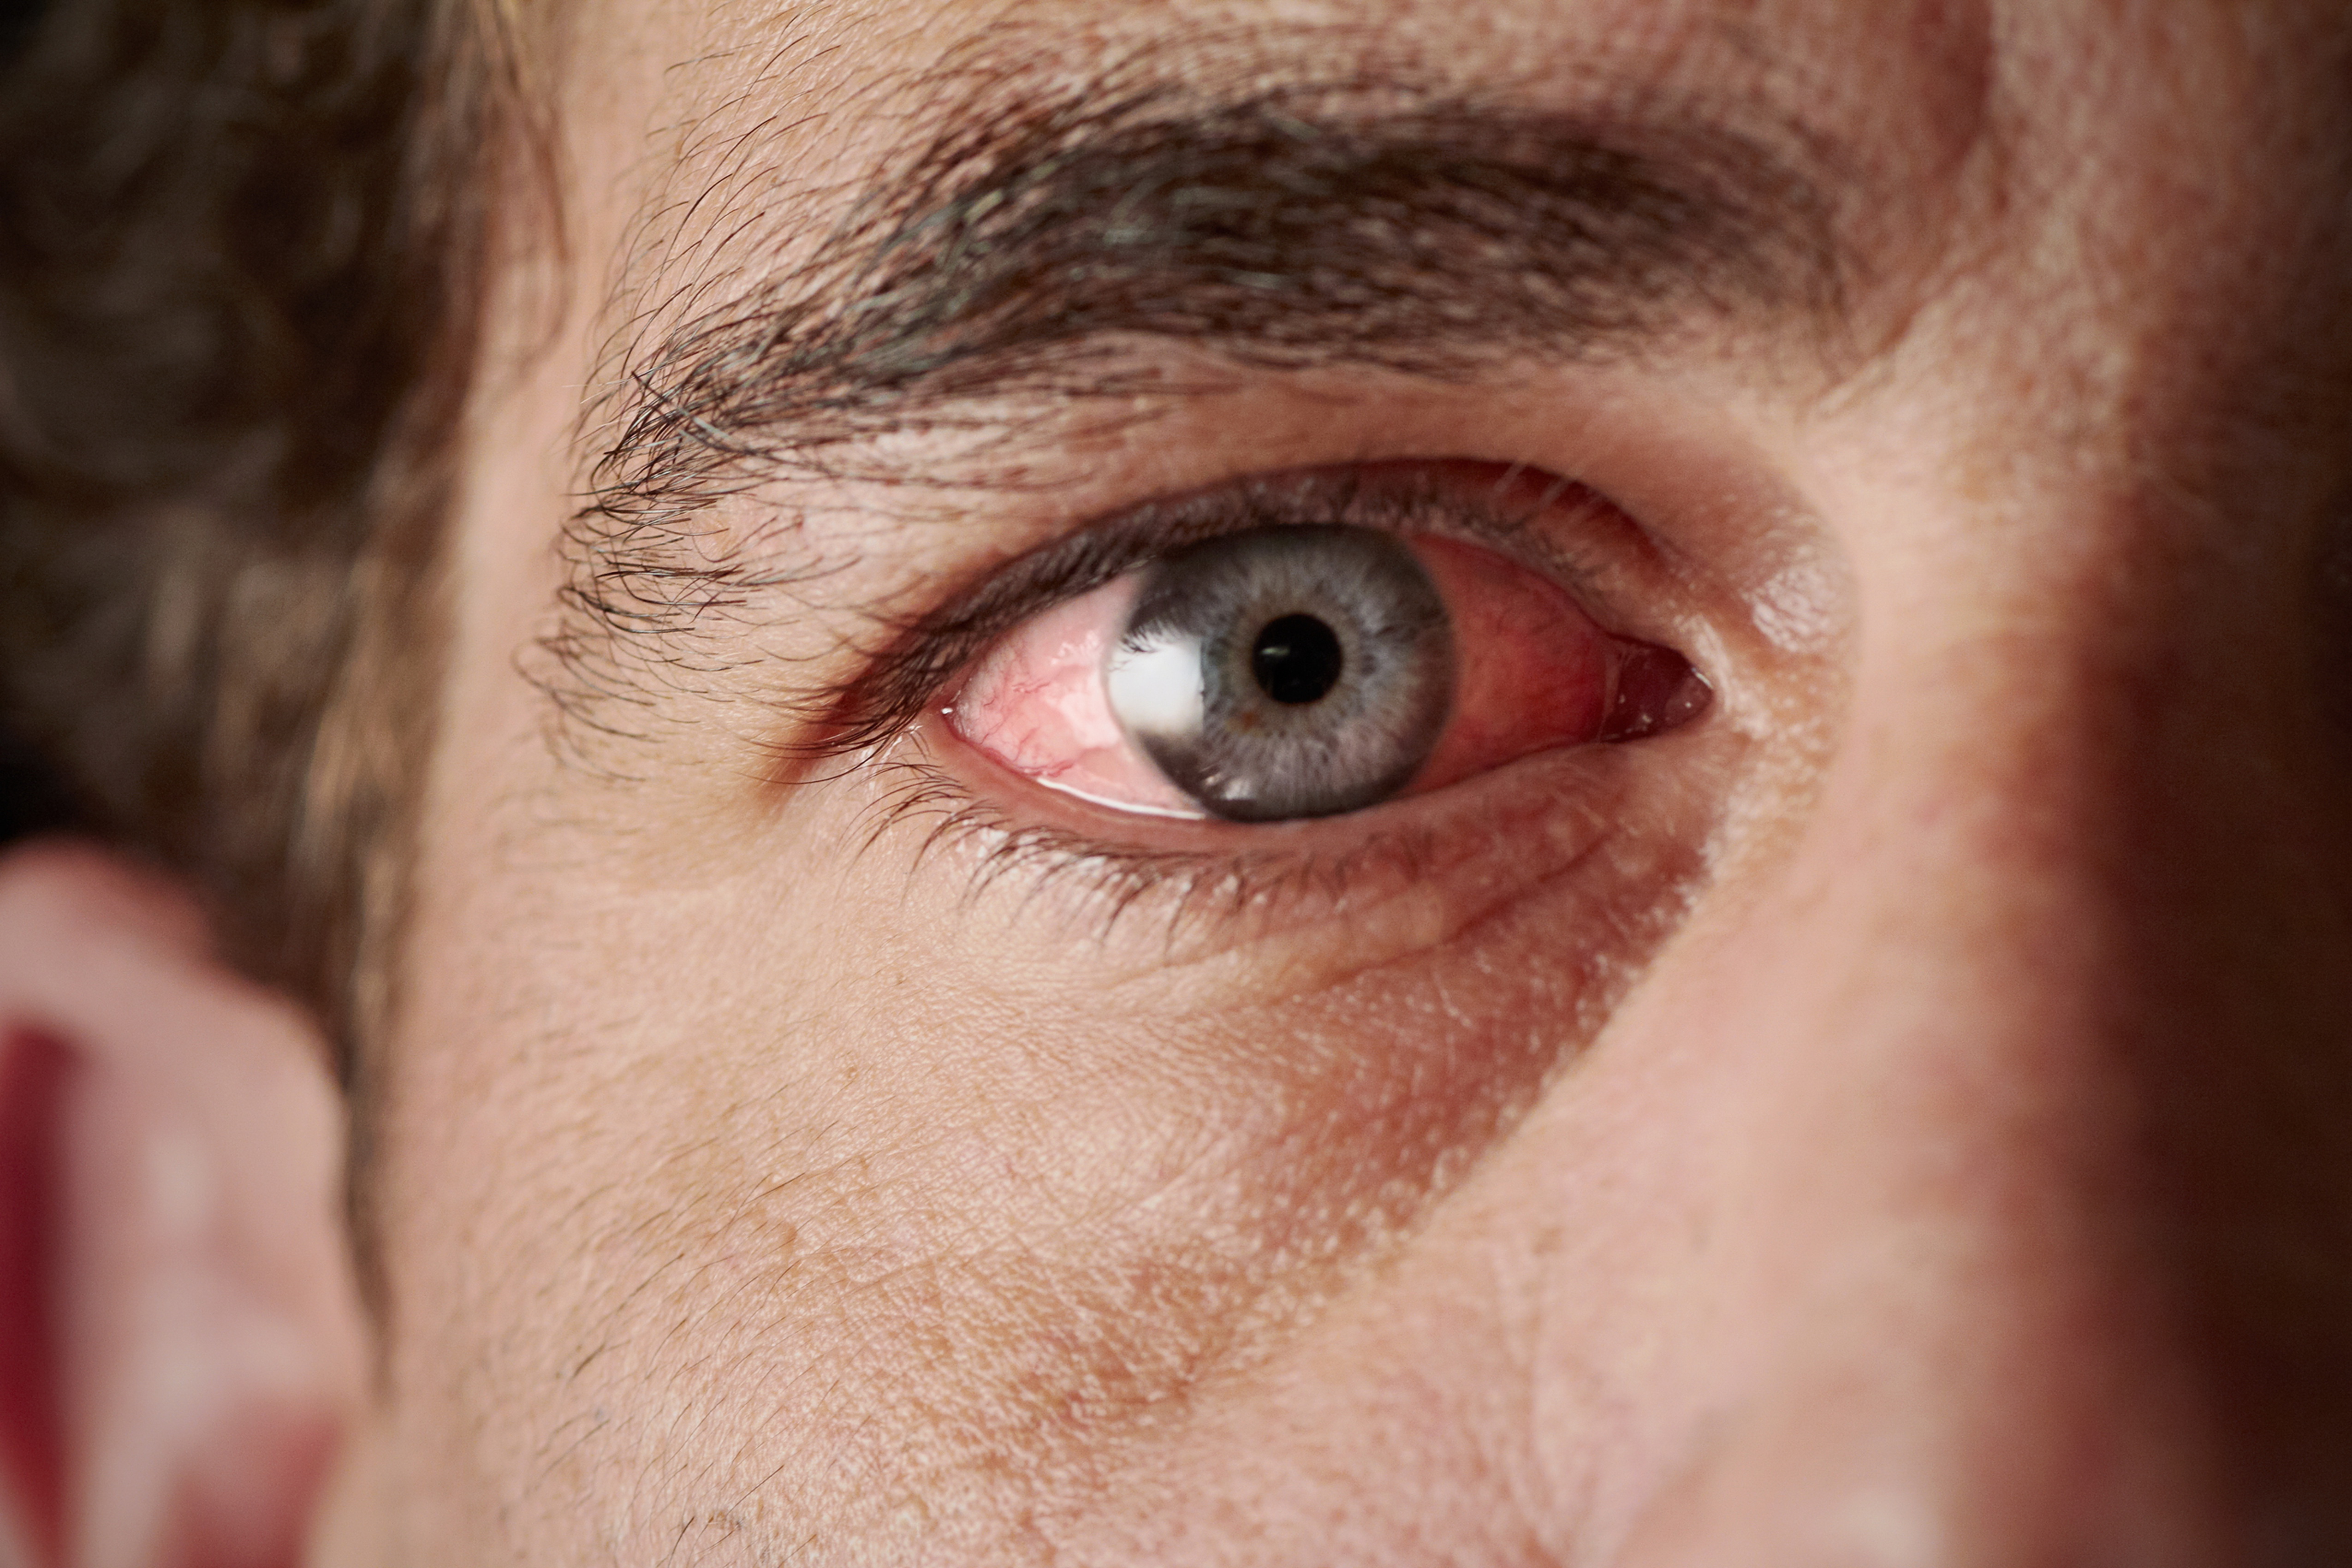 Figyeljen a jelekre - Súlyos betegségekre utalhat a véreres szem - Blikk  Rúzs